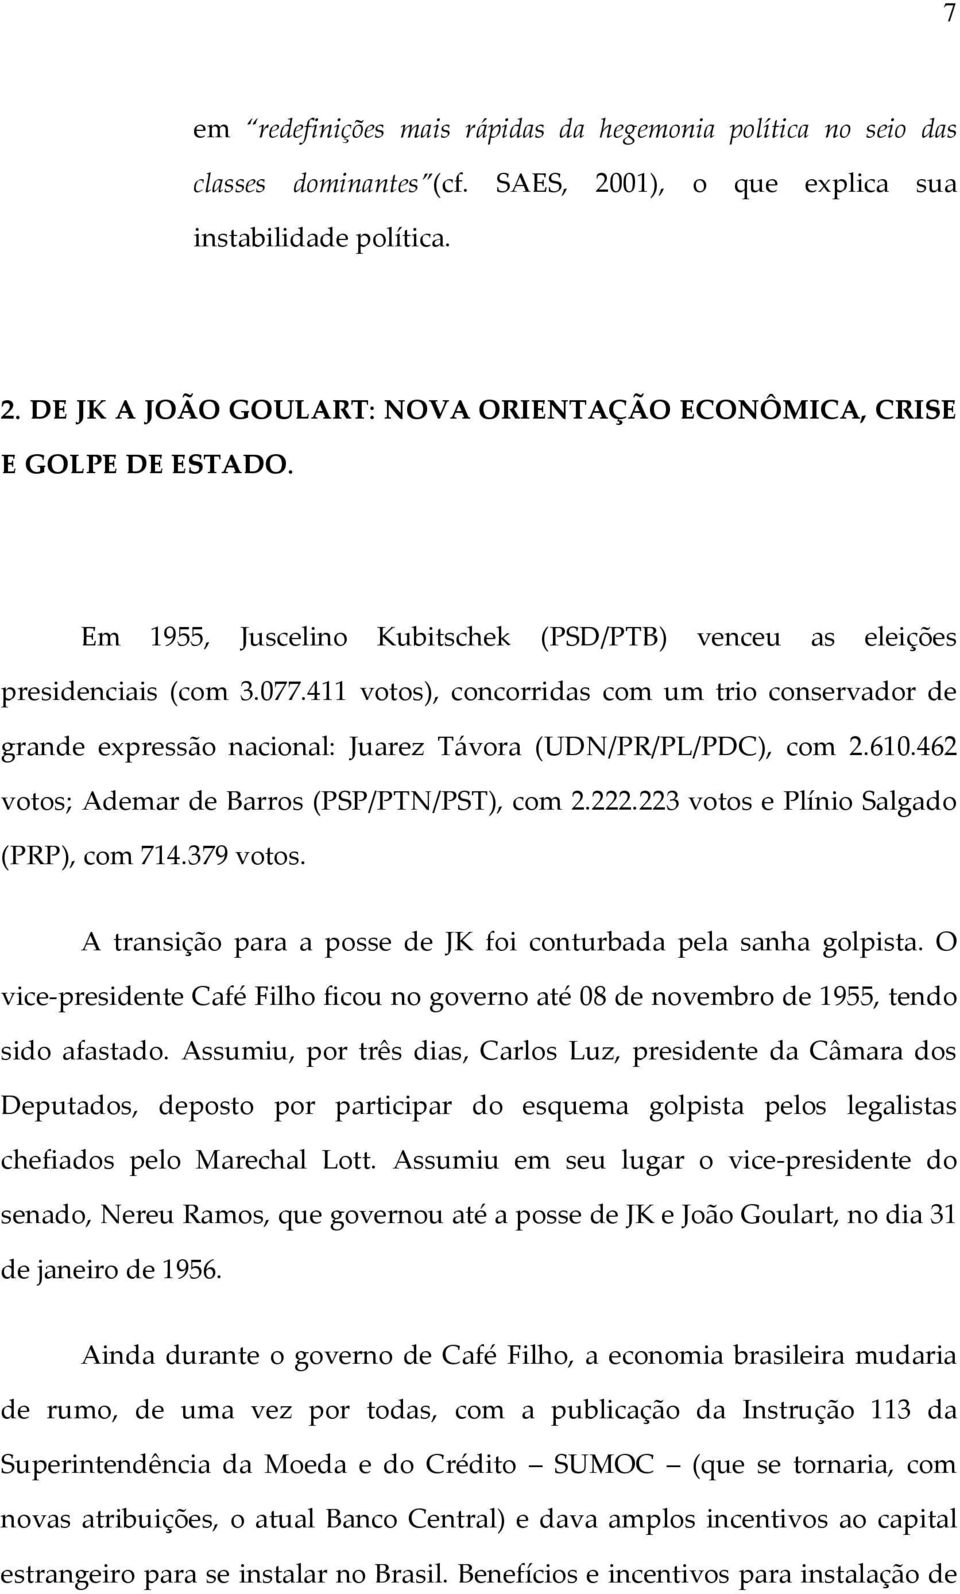 610.462 votos; Ademar de Barros (PSP/PTN/PST), com 2.222.223 votos e Plínio Salgado (PRP), com 714.379 votos. A transição para a posse de JK foi conturbada pela sanha golpista.